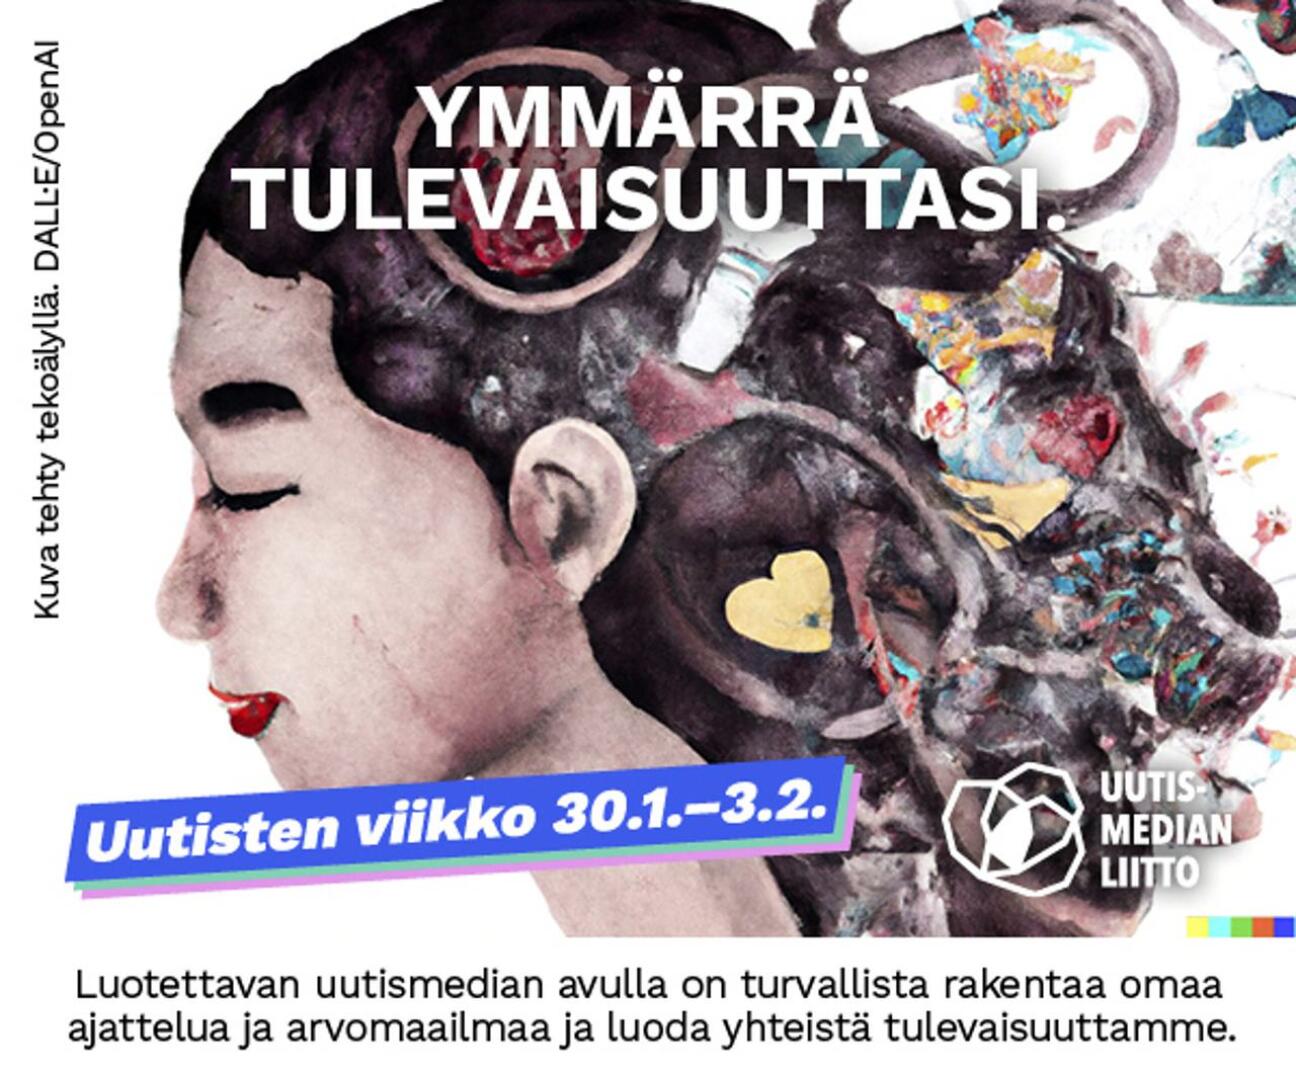 Uutisten viikkoa vietettiin mediassa ja Suomen kouluissa tammi-helmikuun vaihteessa.